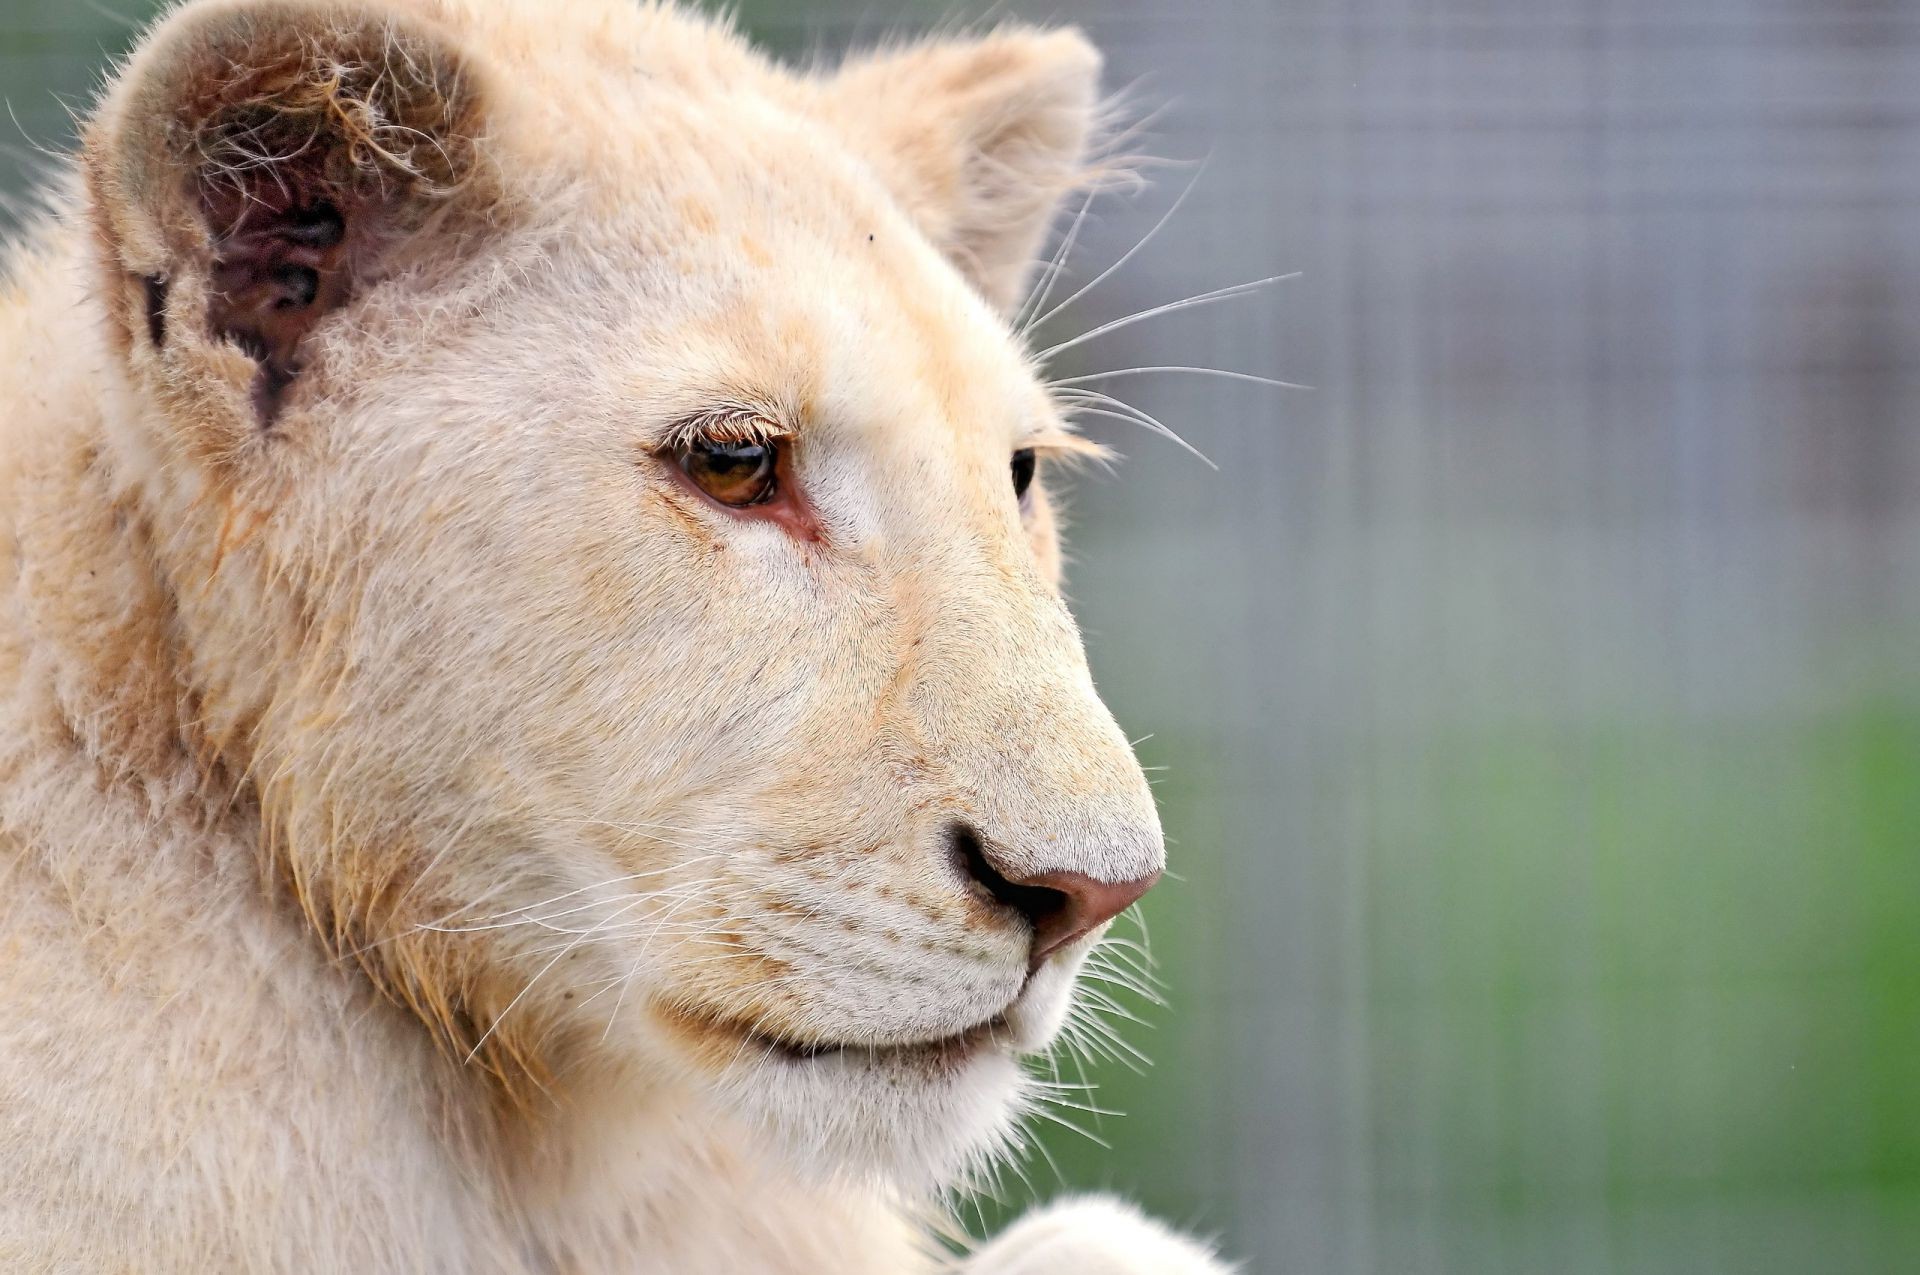 львы дикой природы животное природа млекопитающее мех портрет зоопарк дикий милые глаз хищник кошка просмотр опасность